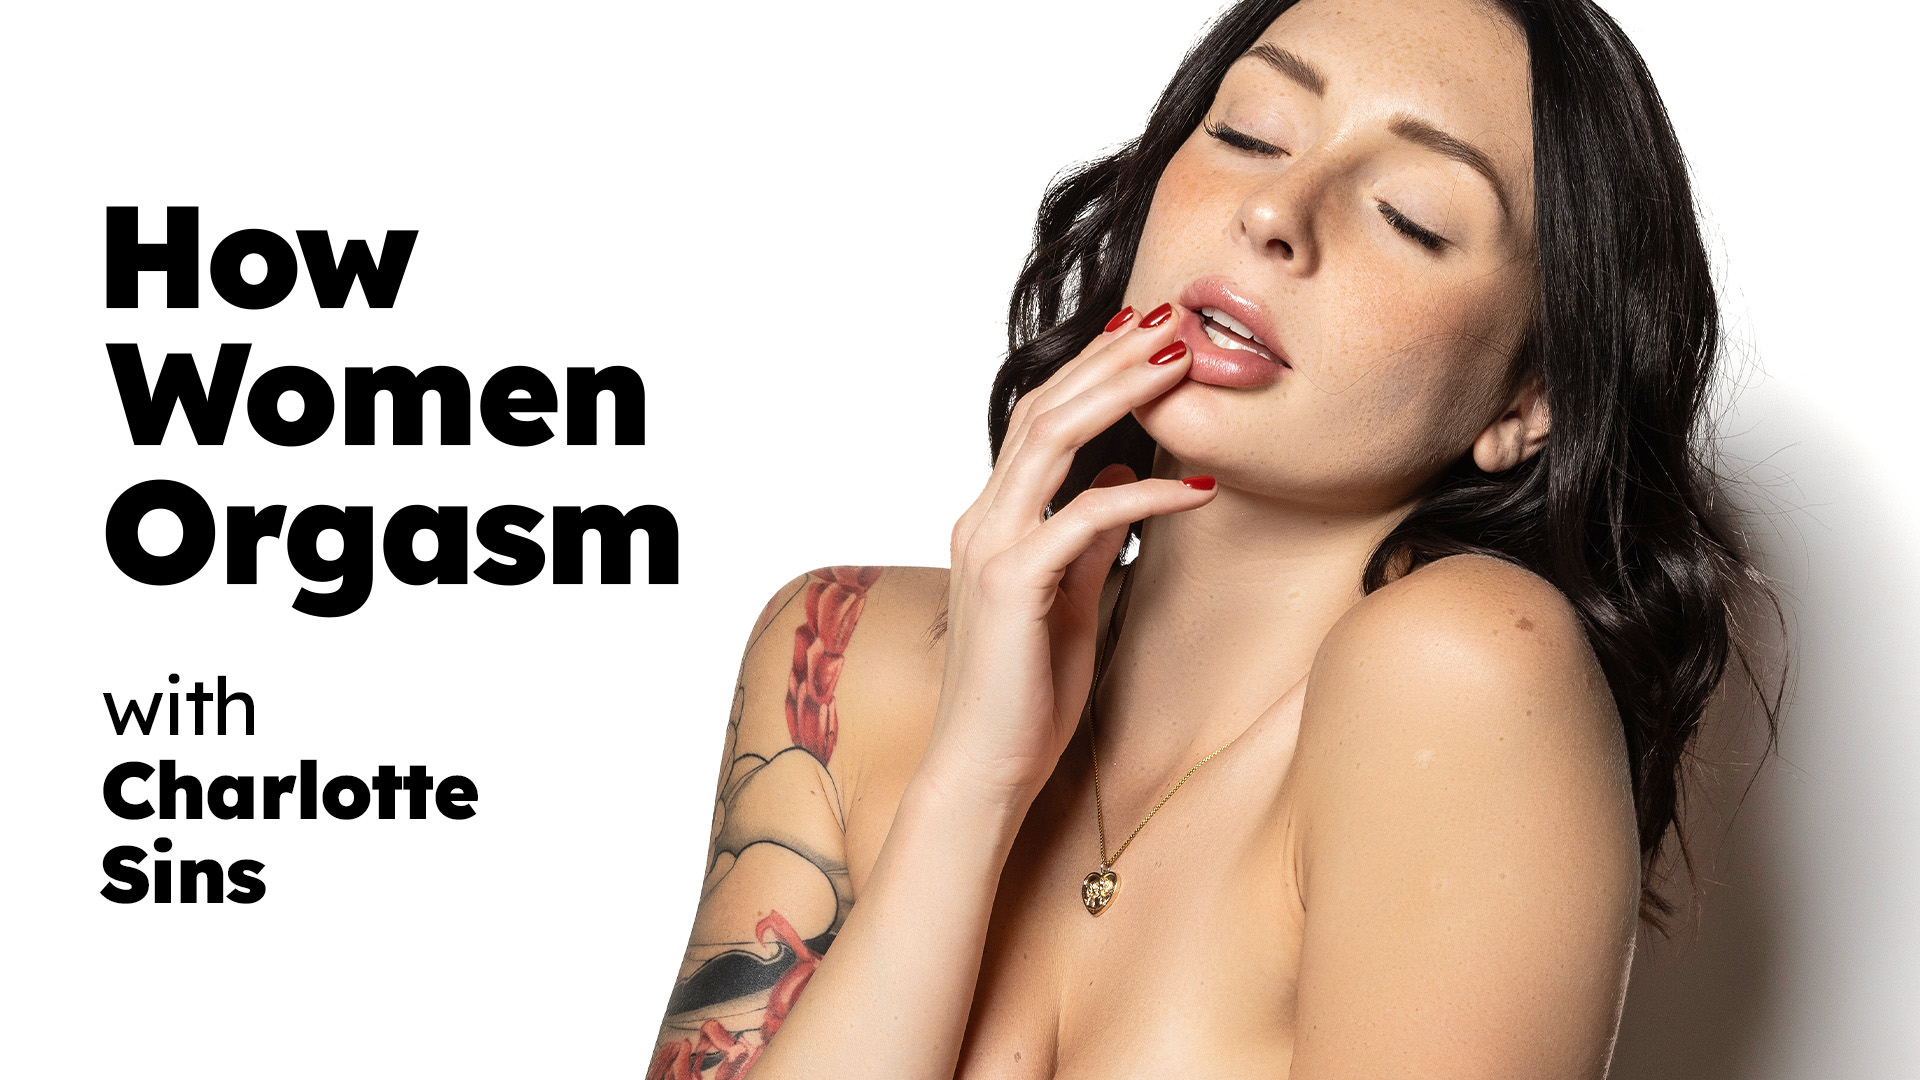 Charlotte Sins How Women Orgasm - Charlotte Sins HowWomenOrgasm